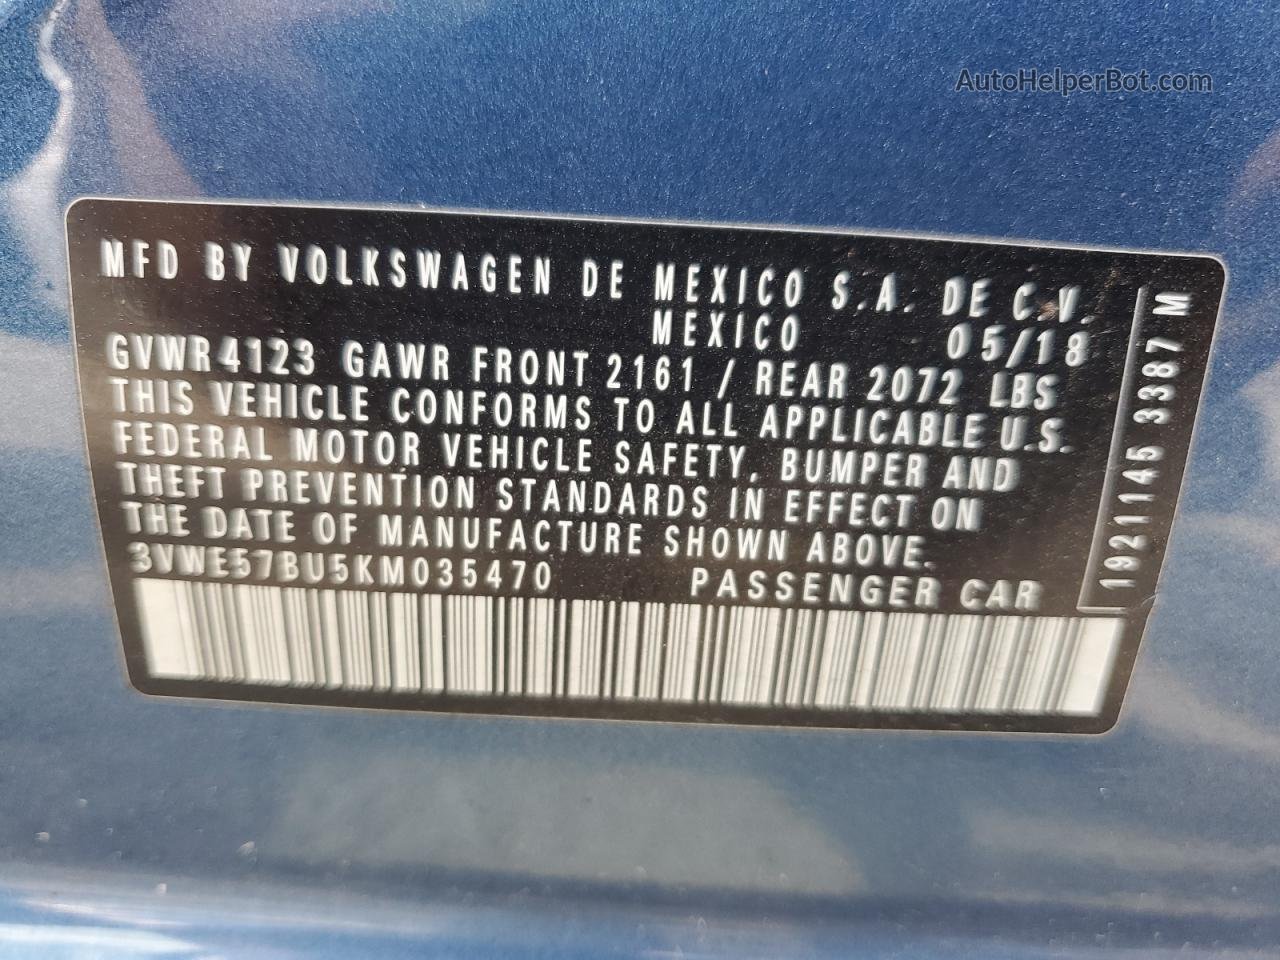 2019 Volkswagen Jetta Sel Blue vin: 3VWE57BU5KM035470